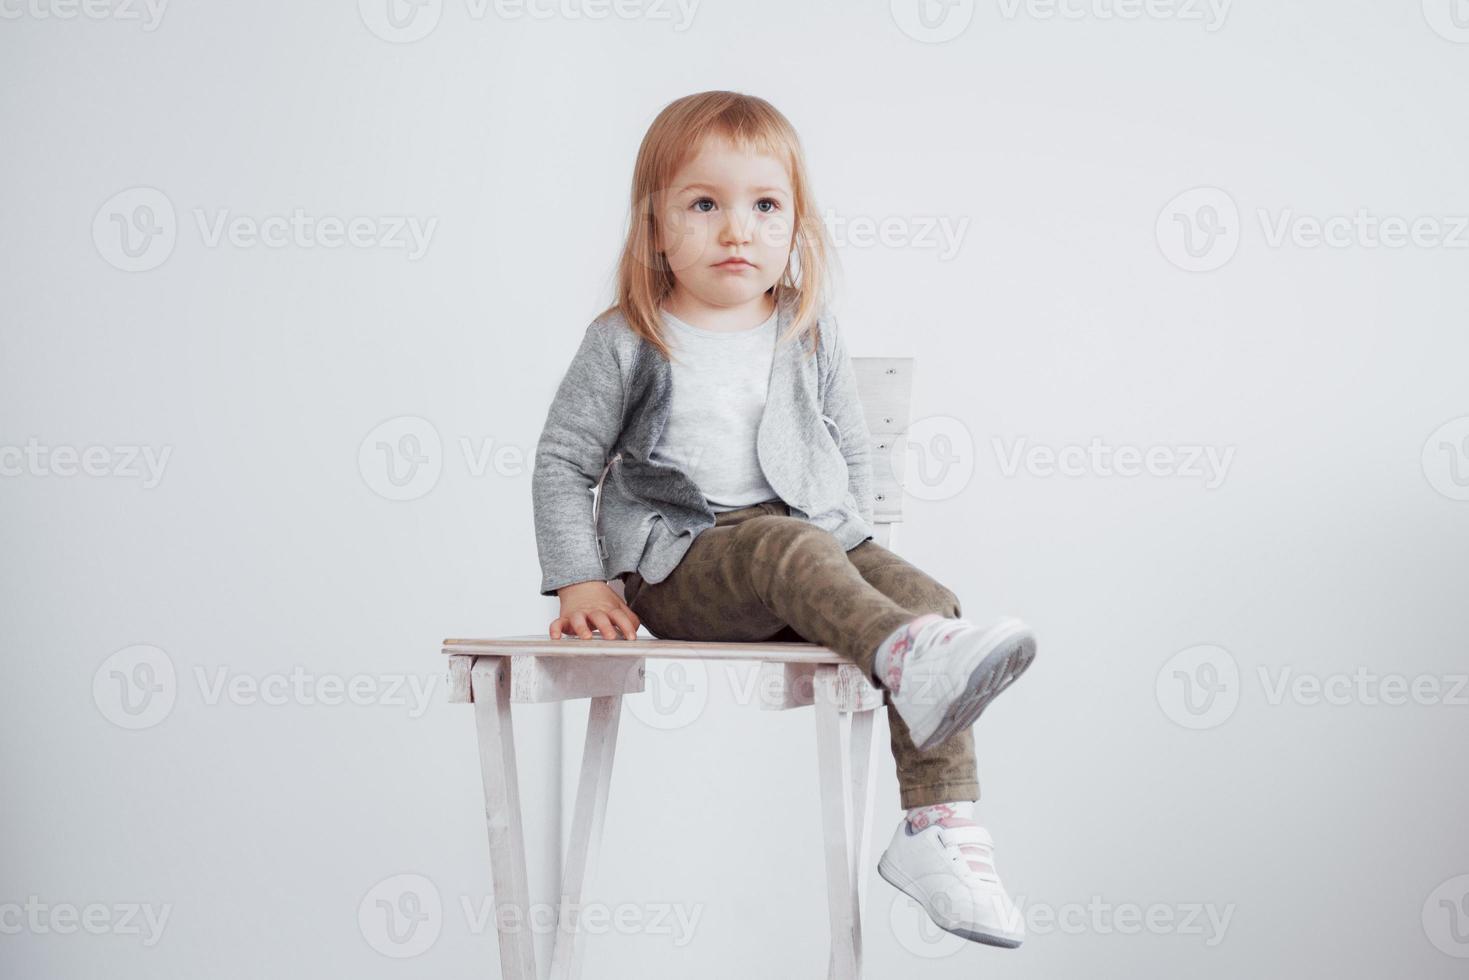 ett litet barn, en liten flicka som sitter på en hög pall och skrattar foto